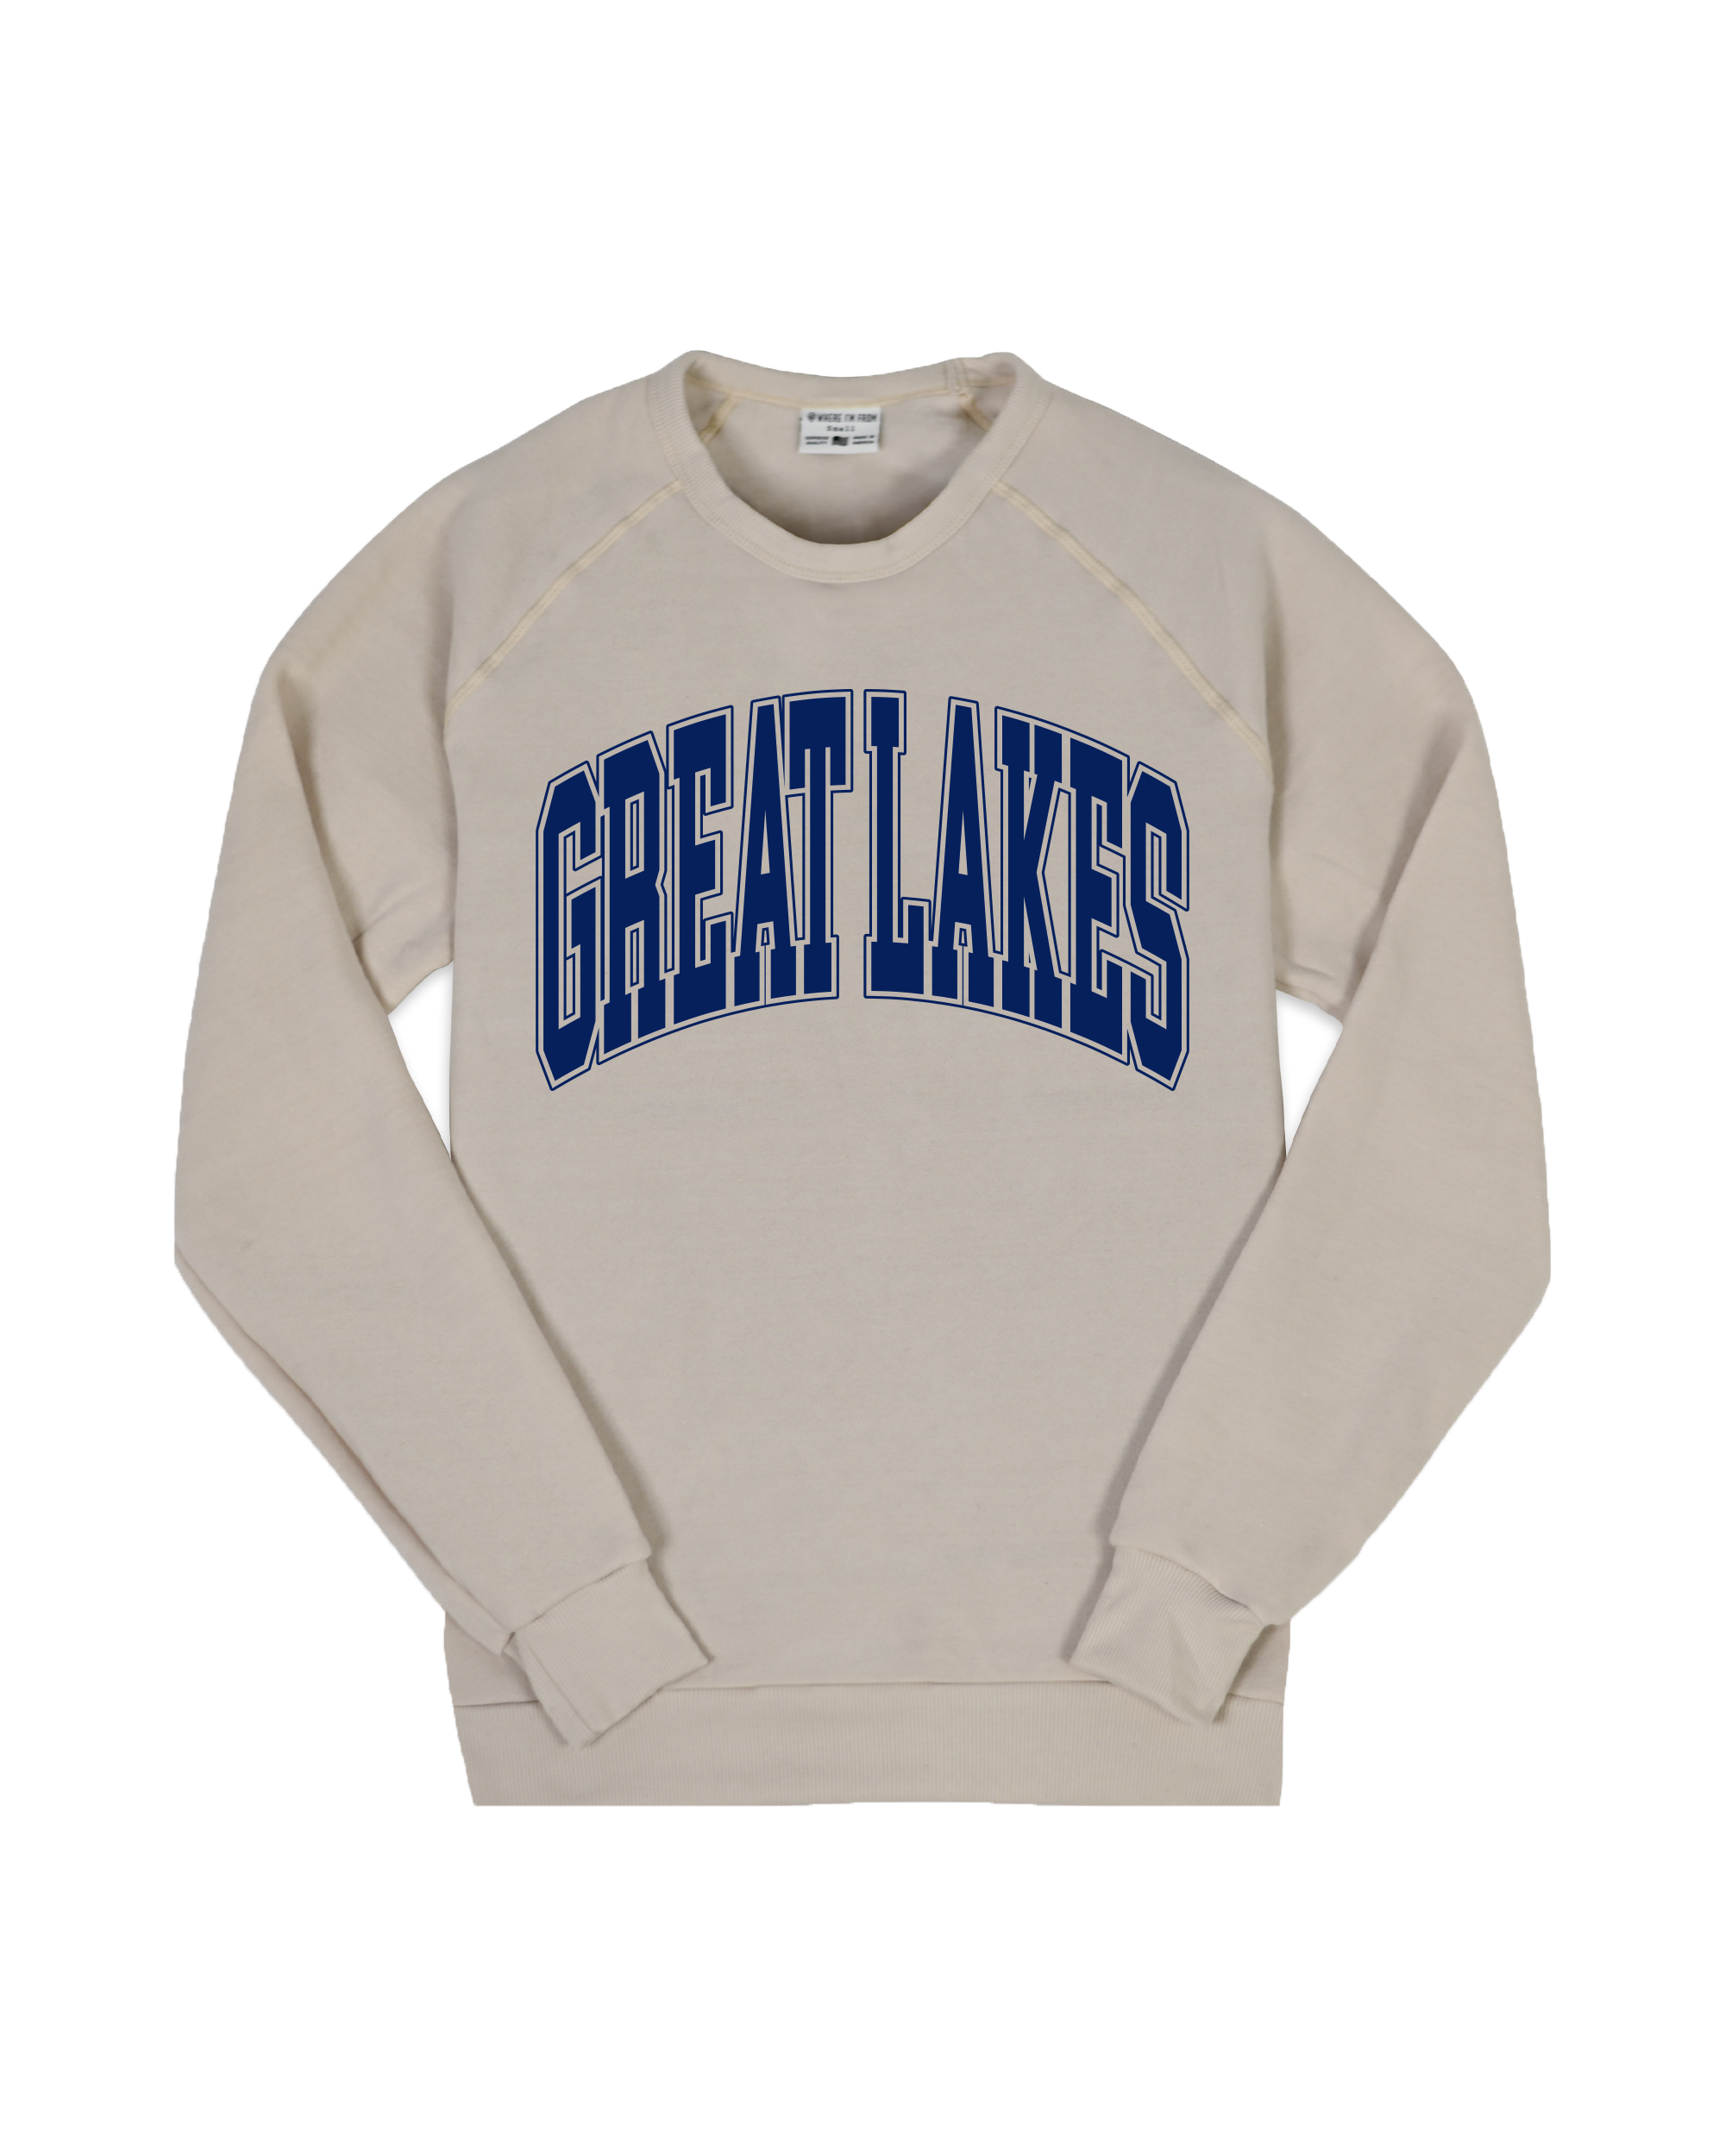 Great Lakes Oversized Oatmeal Sweatshirt